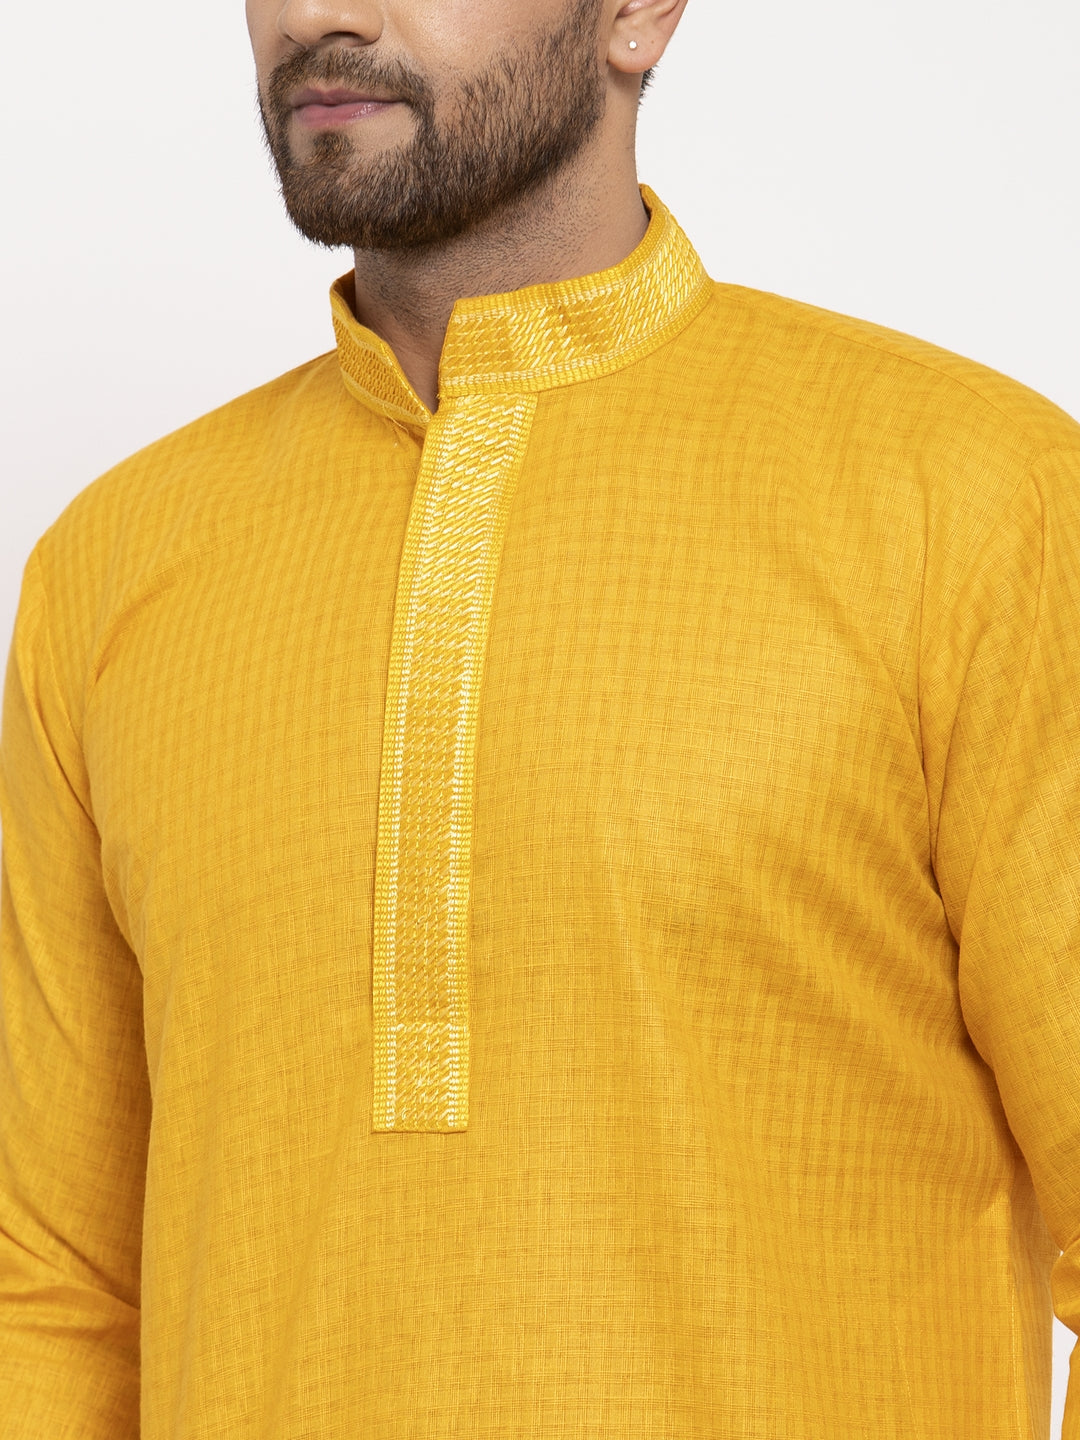 Jompers Men's Mustard Woven Kurta Payjama Sets